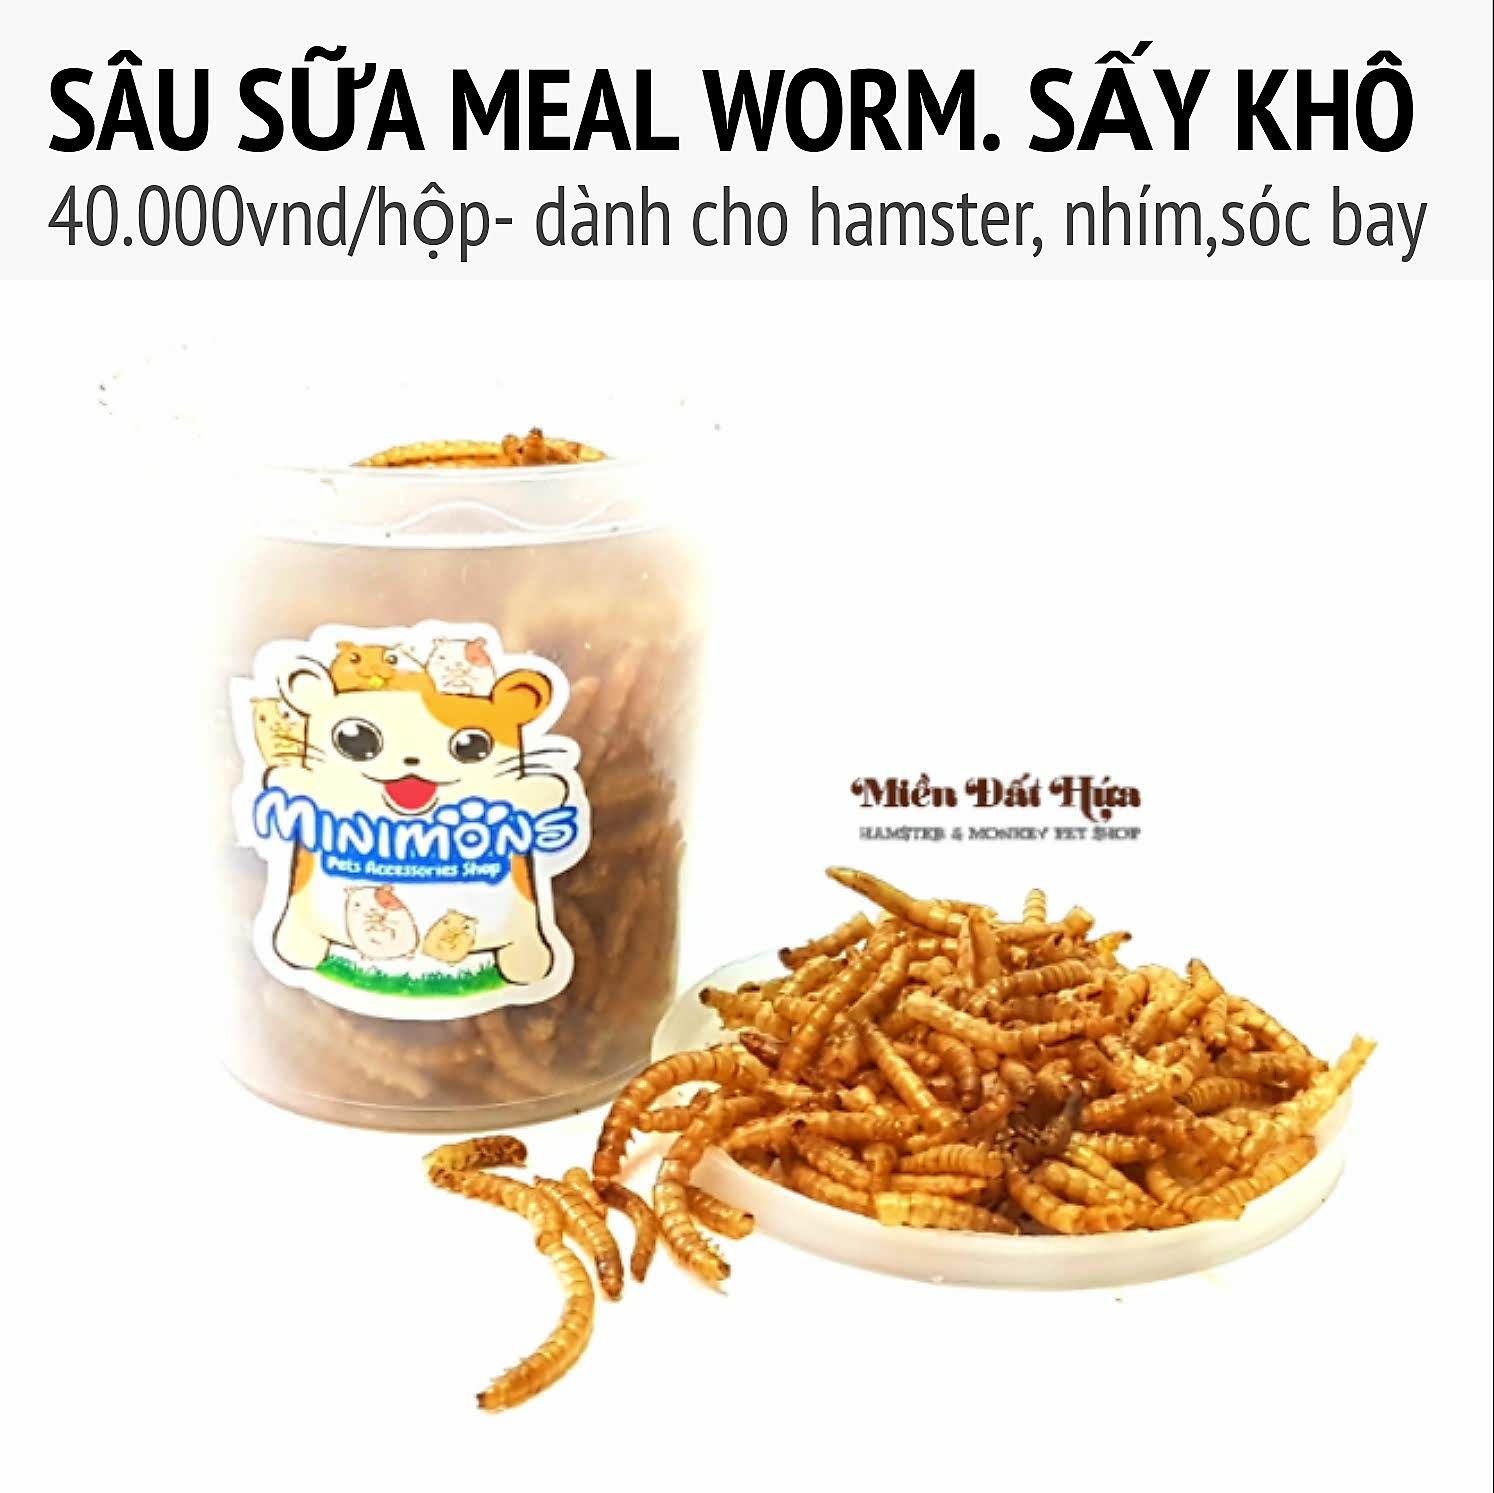 Sâu sữa meal worm sấy khô – Hủ nhỏ